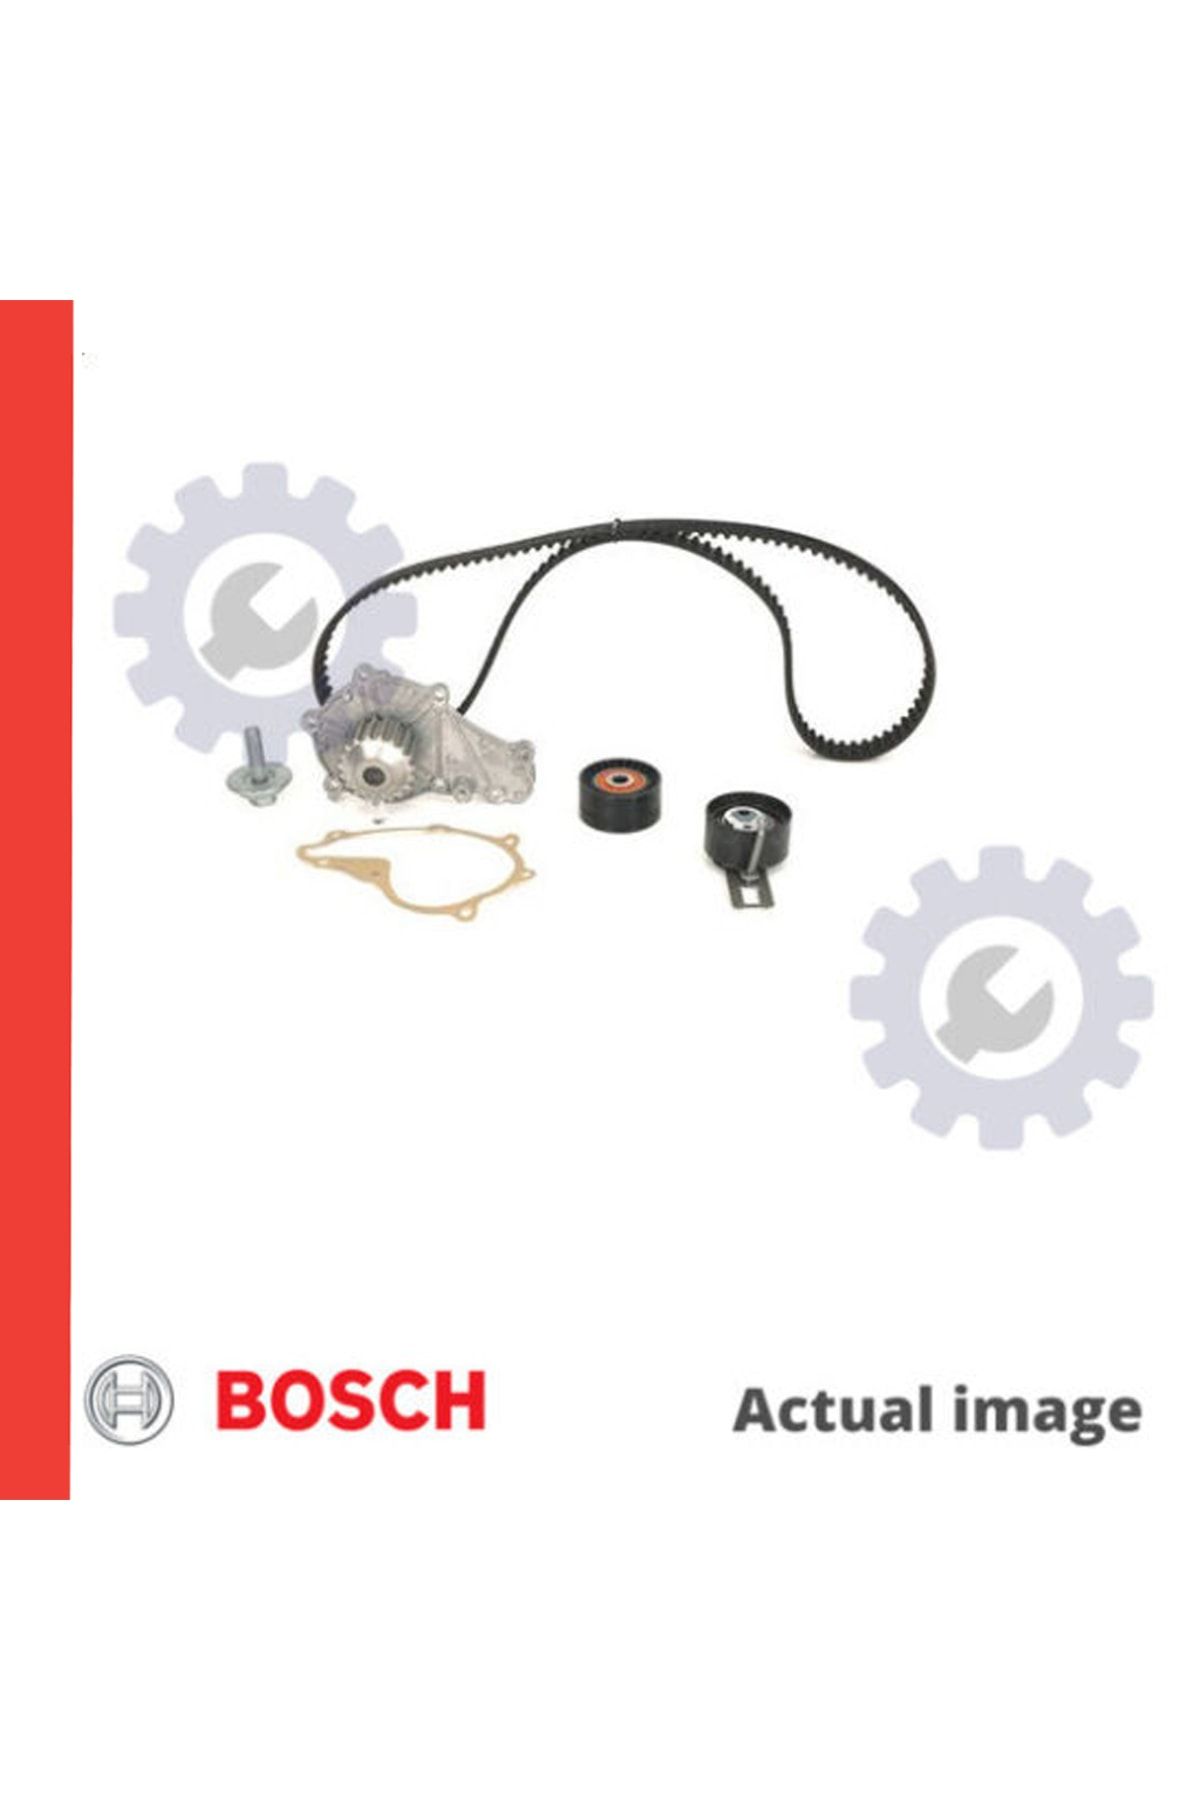 Bosch Ford B-max 1.5 1.6 Hdı Triger Seti 2012-2015